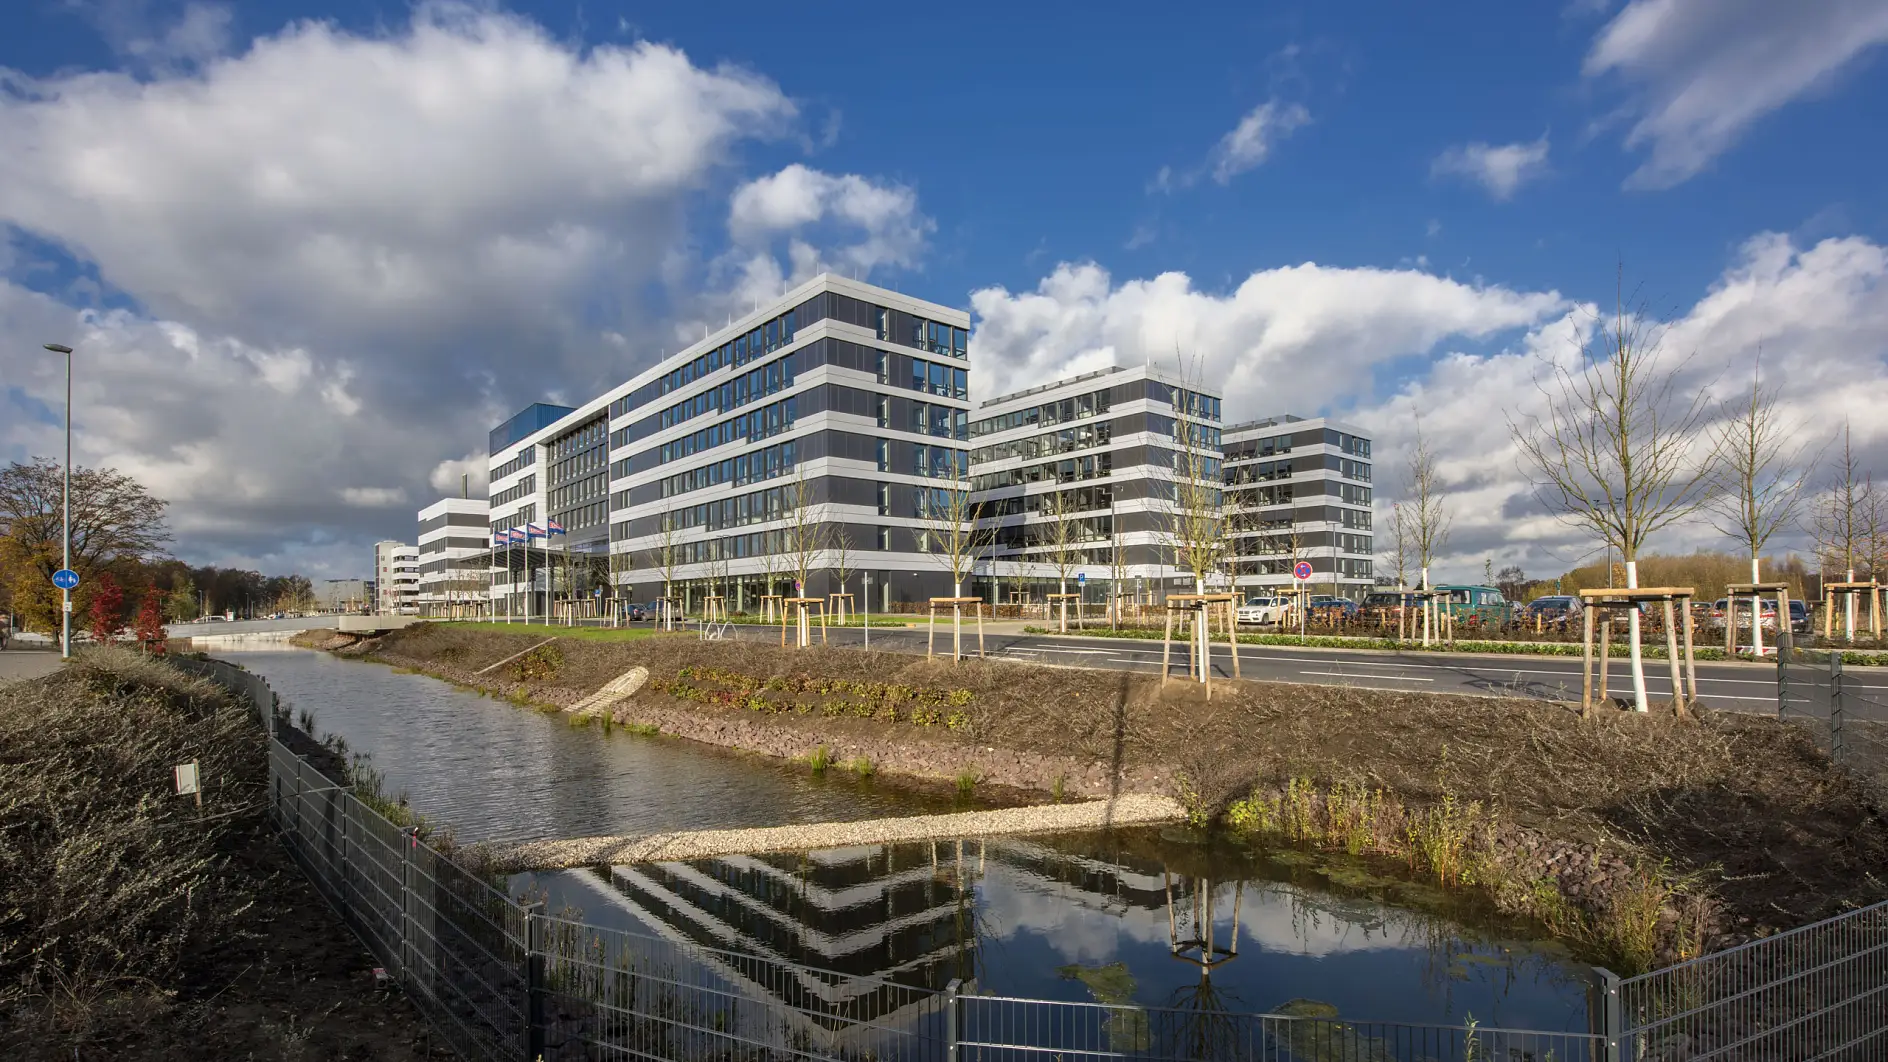 tesa SE’s nye hovedkvarter i Norderstedt i Tyskland